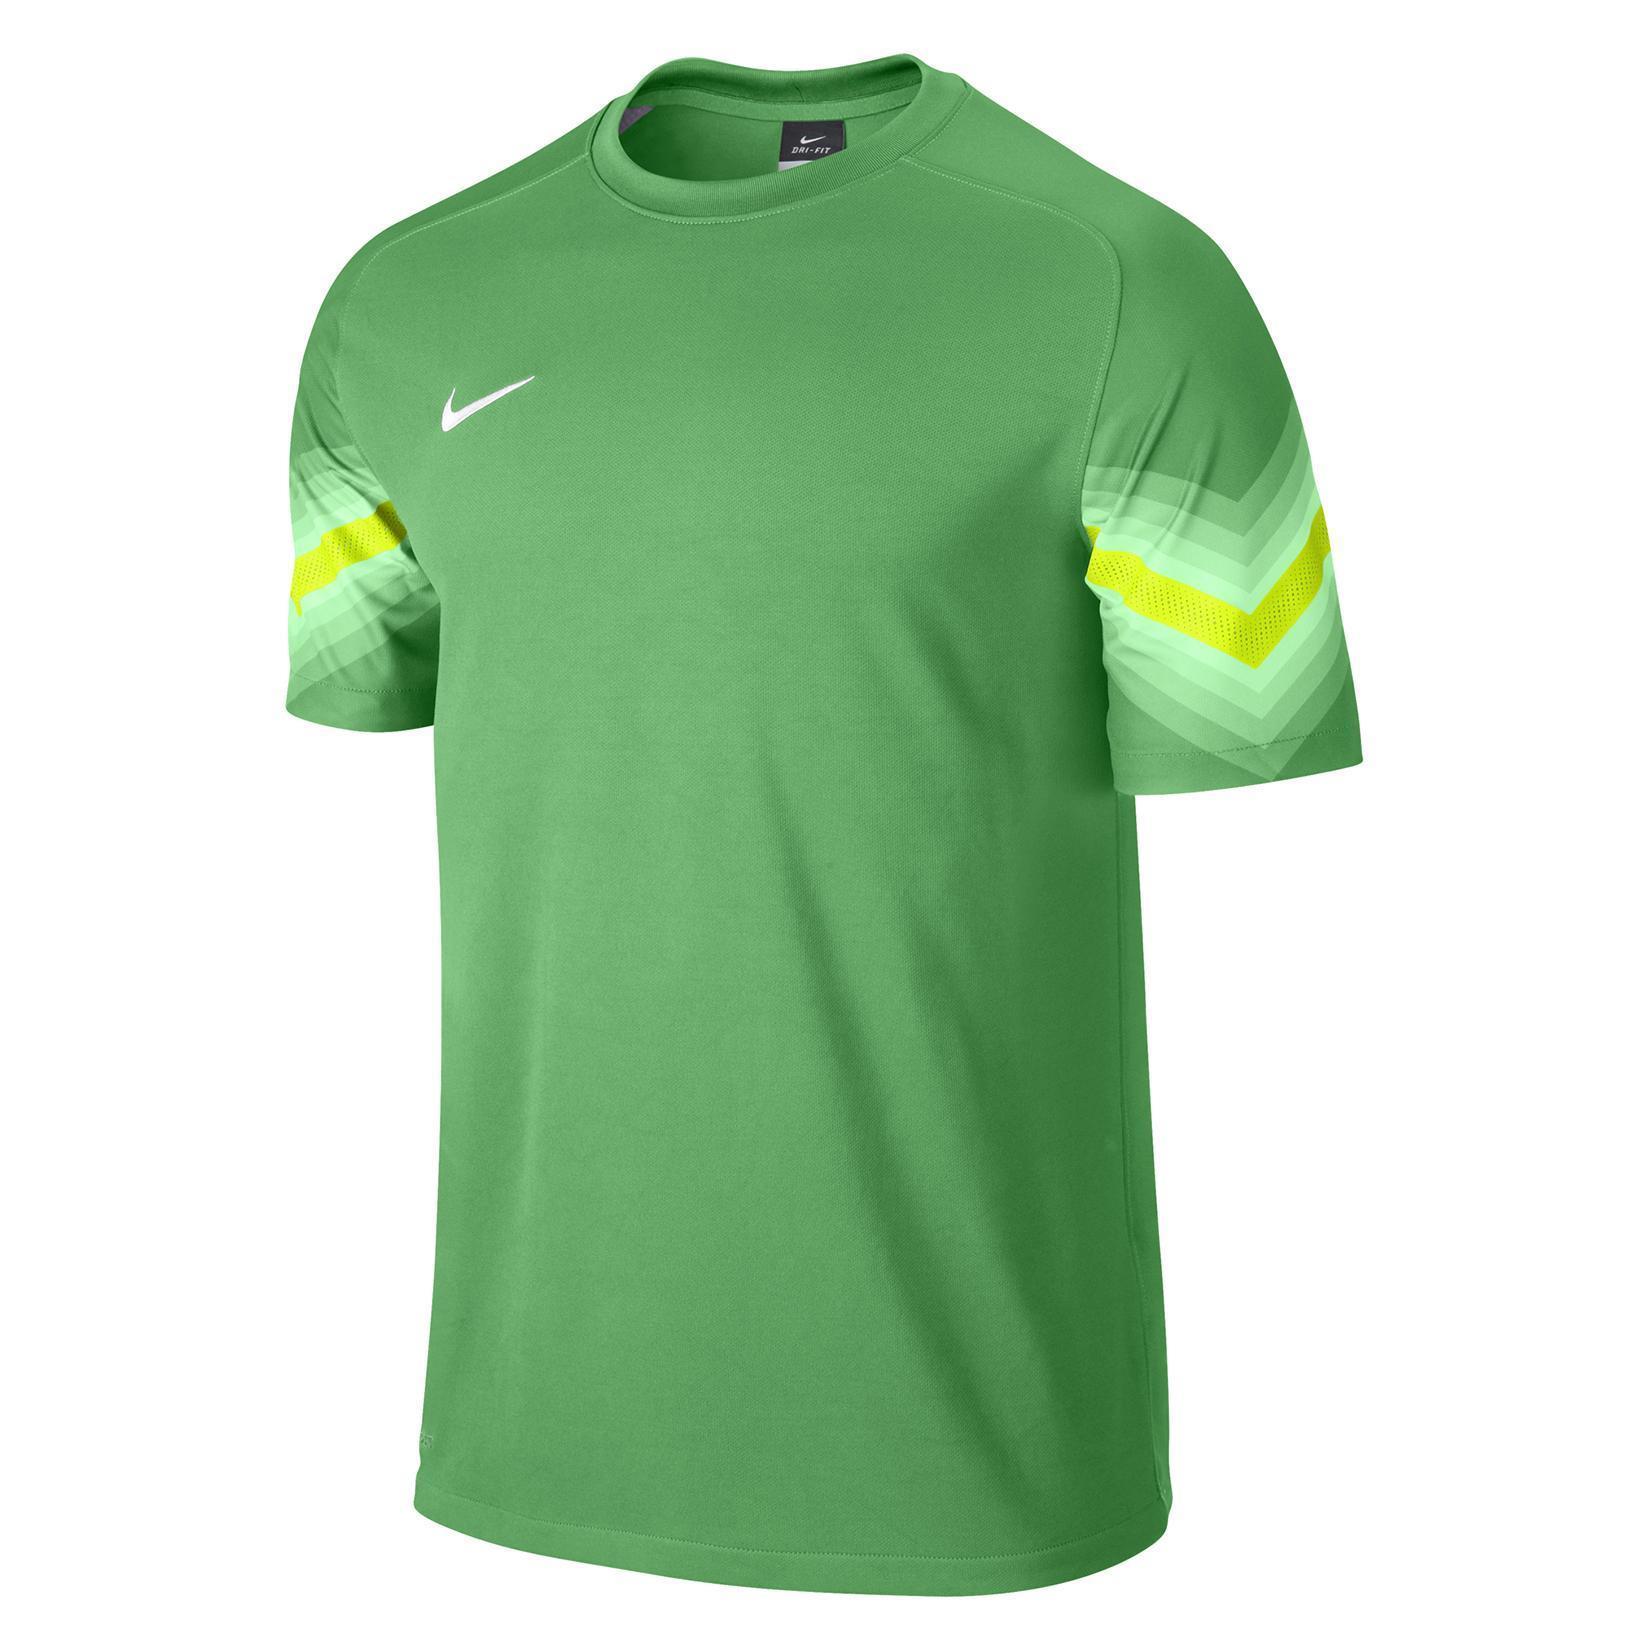 Nike Goleiro Short Sleeve Football Goalkeeper Kit - Kitlocker.com